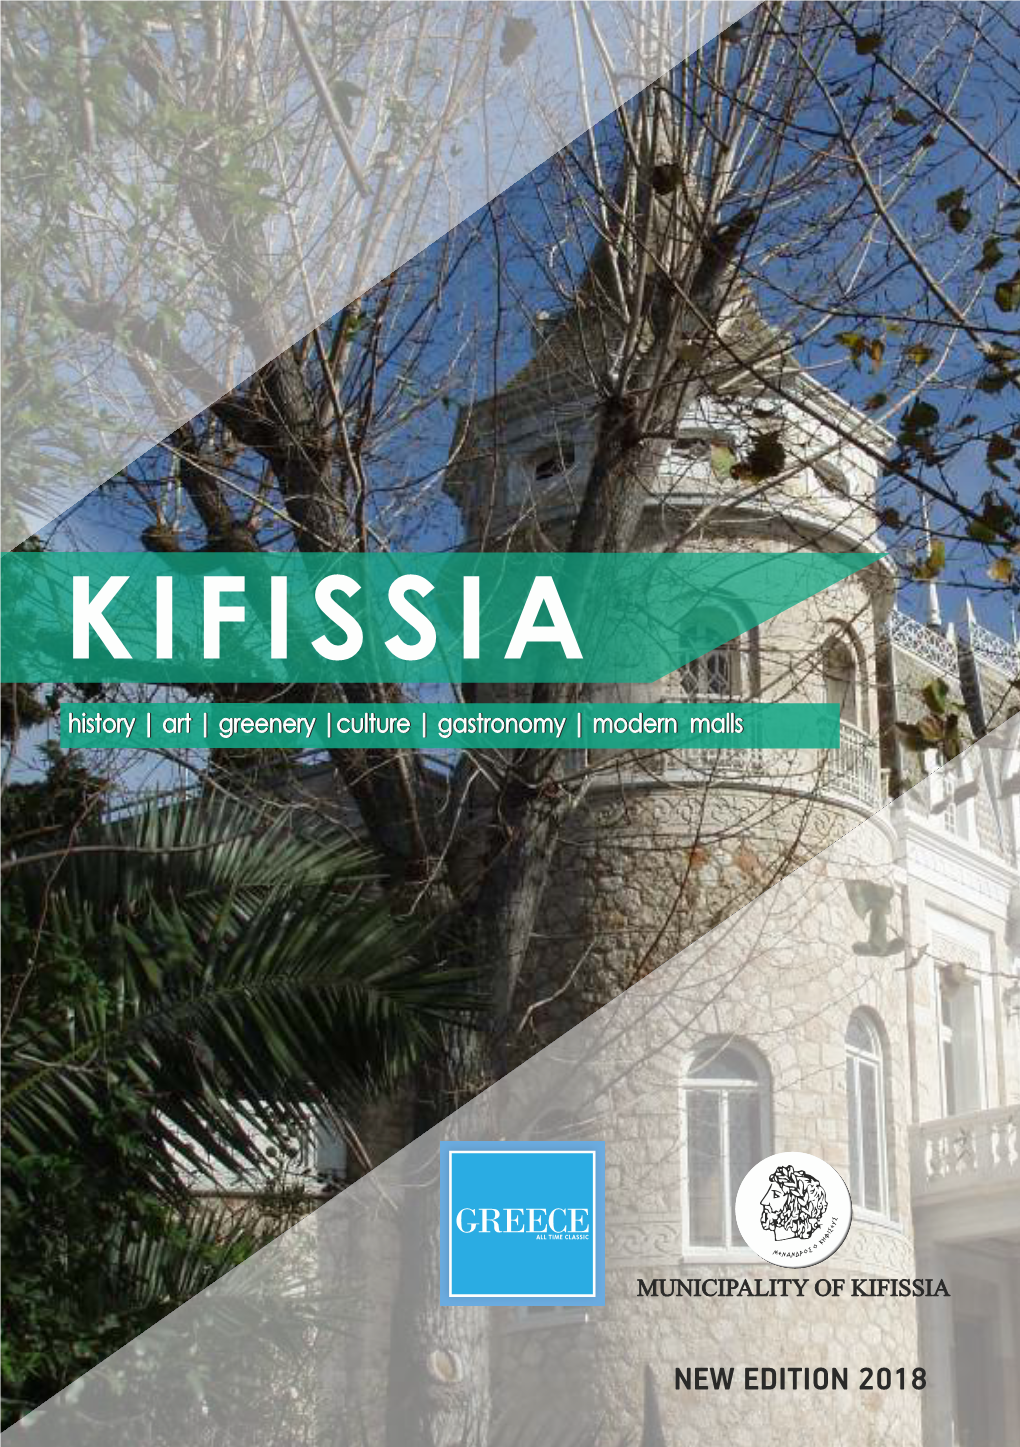 Travel Guide of Kifissia En.Pdf